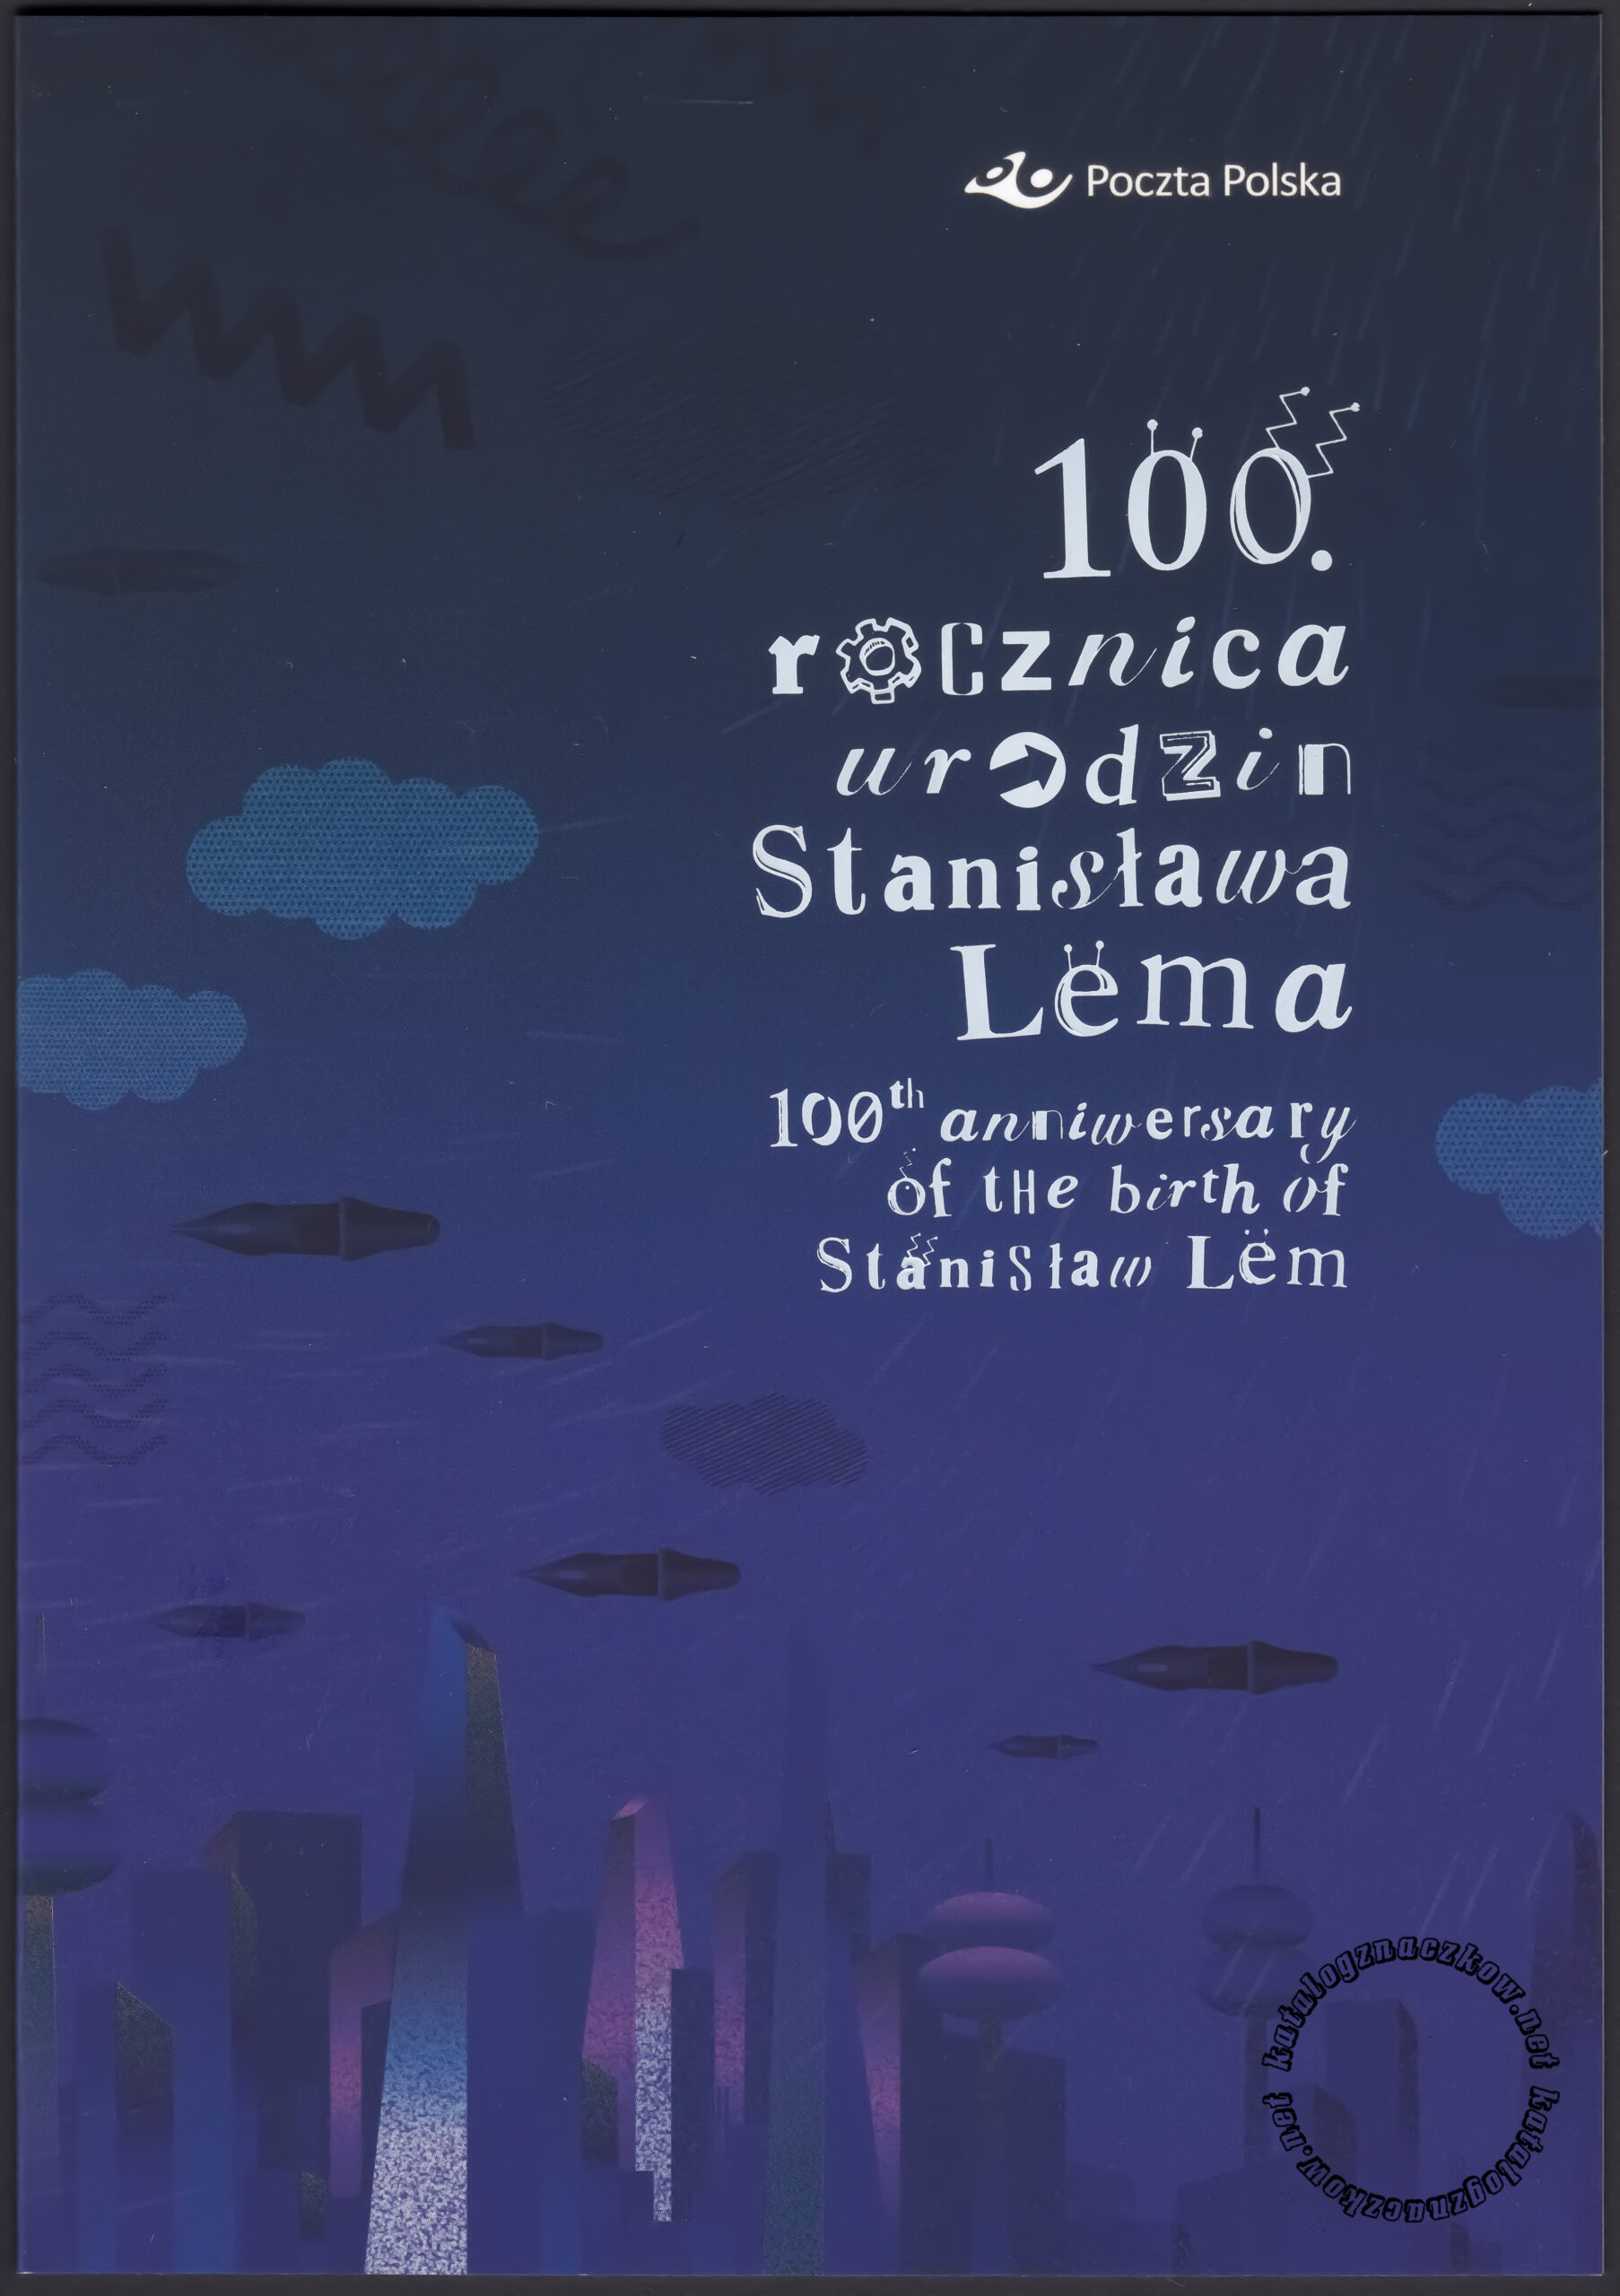 100 rocznica urodzin Stanisława Lema – Folder – folder strona 1